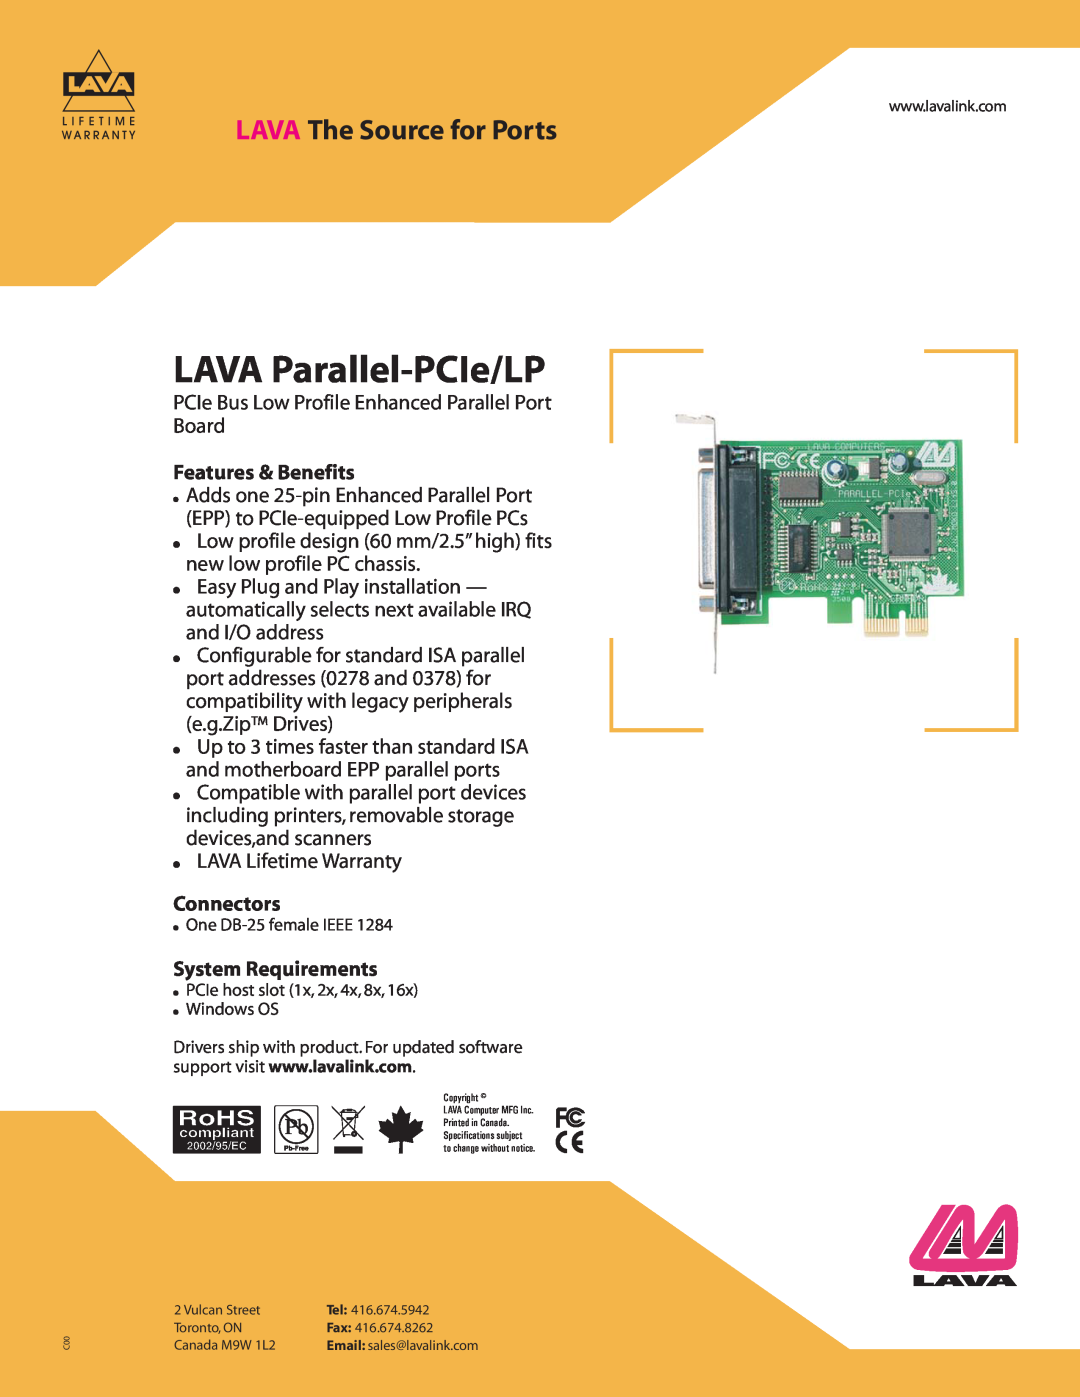 Lava Computer warranty LAVA Parallel-PCIe/LP, LAVA The Source for Ports, Features & Benefits, Connectors 